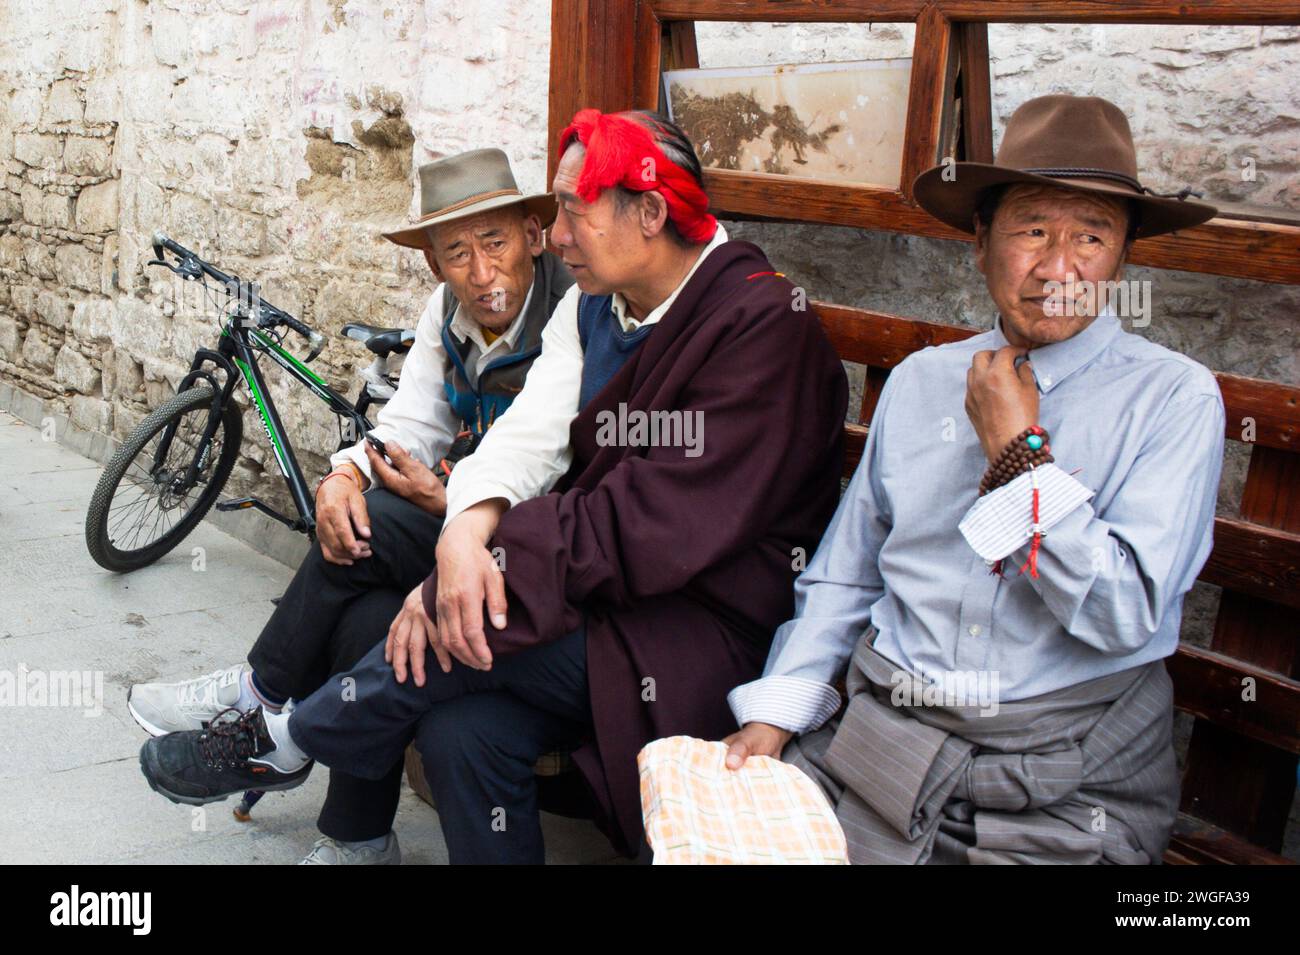 Gli uomini locali riposano su una panchina in piazza Barkhor, sede del Tempio Jokhang a Lhasa, la capitale della regione autonoma del Tibet della Cina. Foto Stock